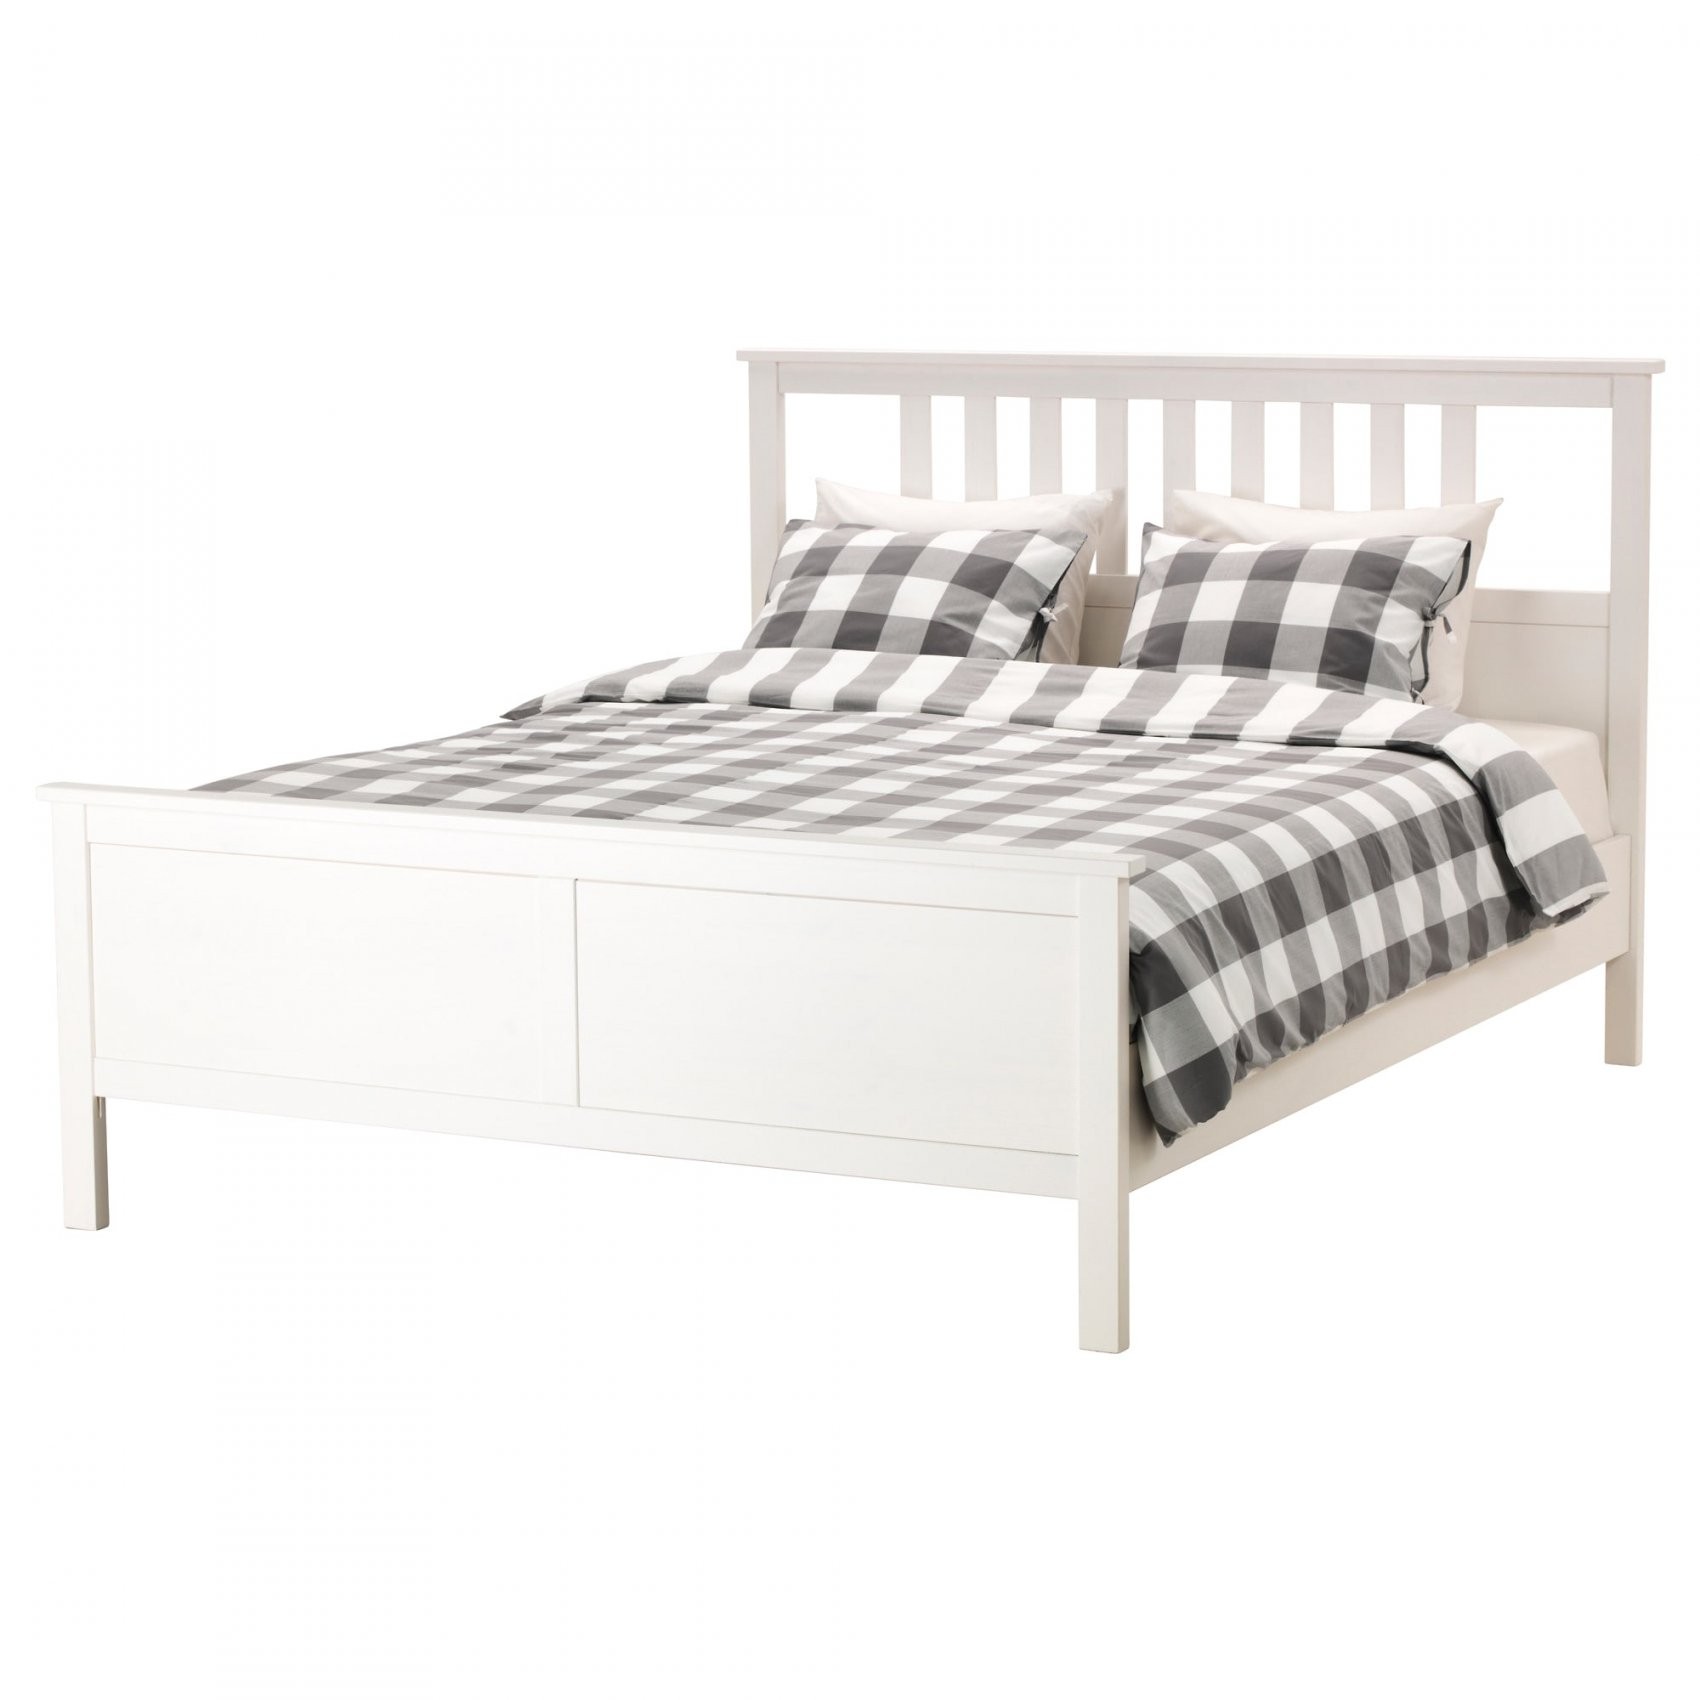 Super King Size Beds Ikea Avec Hemnes Bed Frame White Stain Lur C3 von Ikea Bett 200X200 Photo